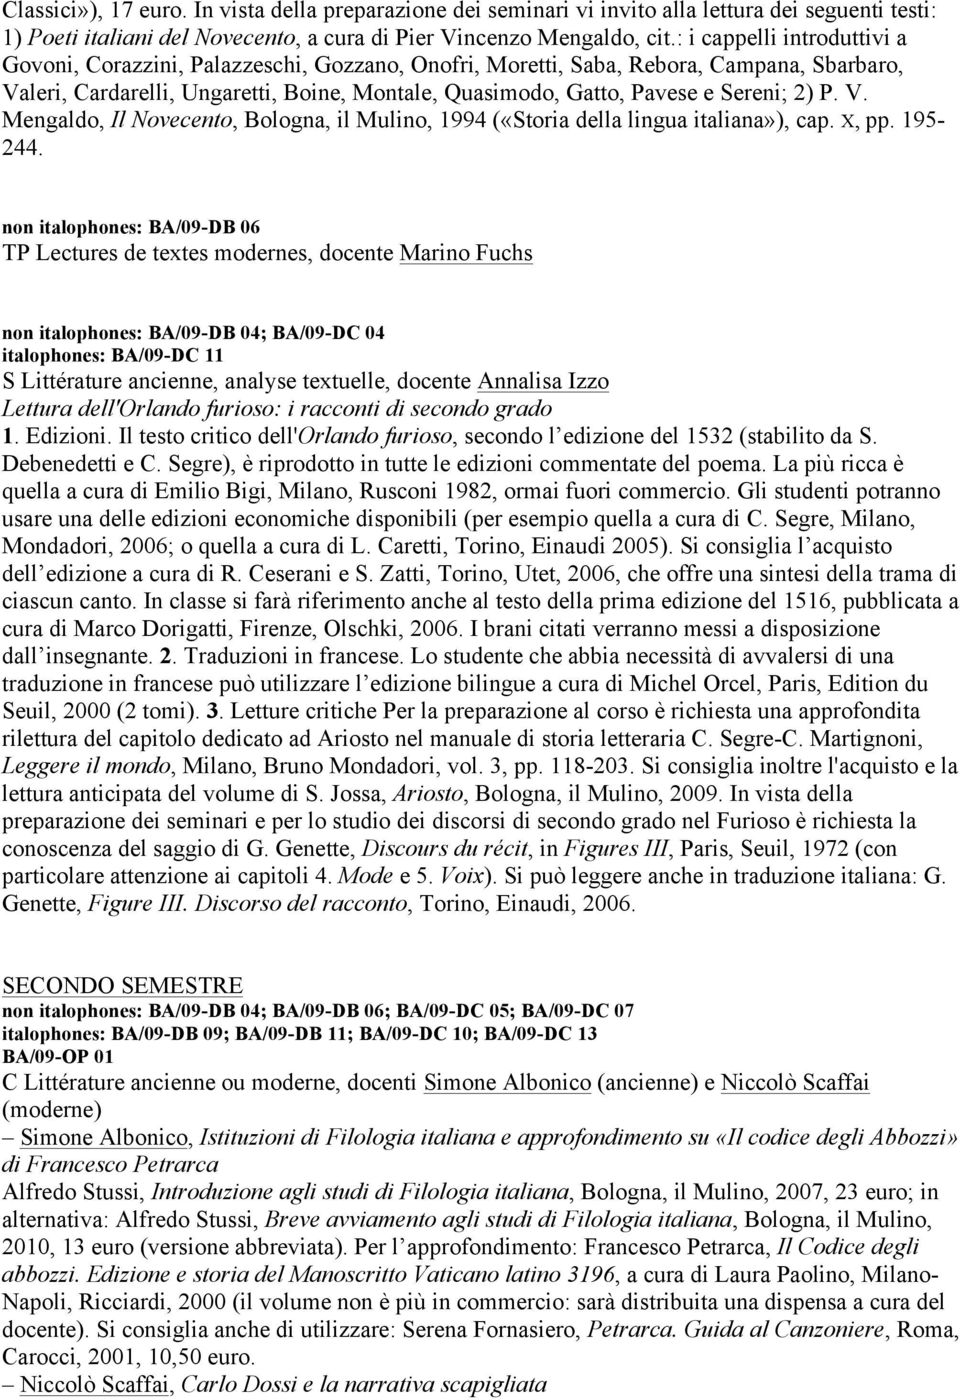 Sereni; 2) P. V. Mengaldo, Il Novecento, Bologna, il Mulino, 1994 («Storia della lingua italiana»), cap. X, pp. 195-244.